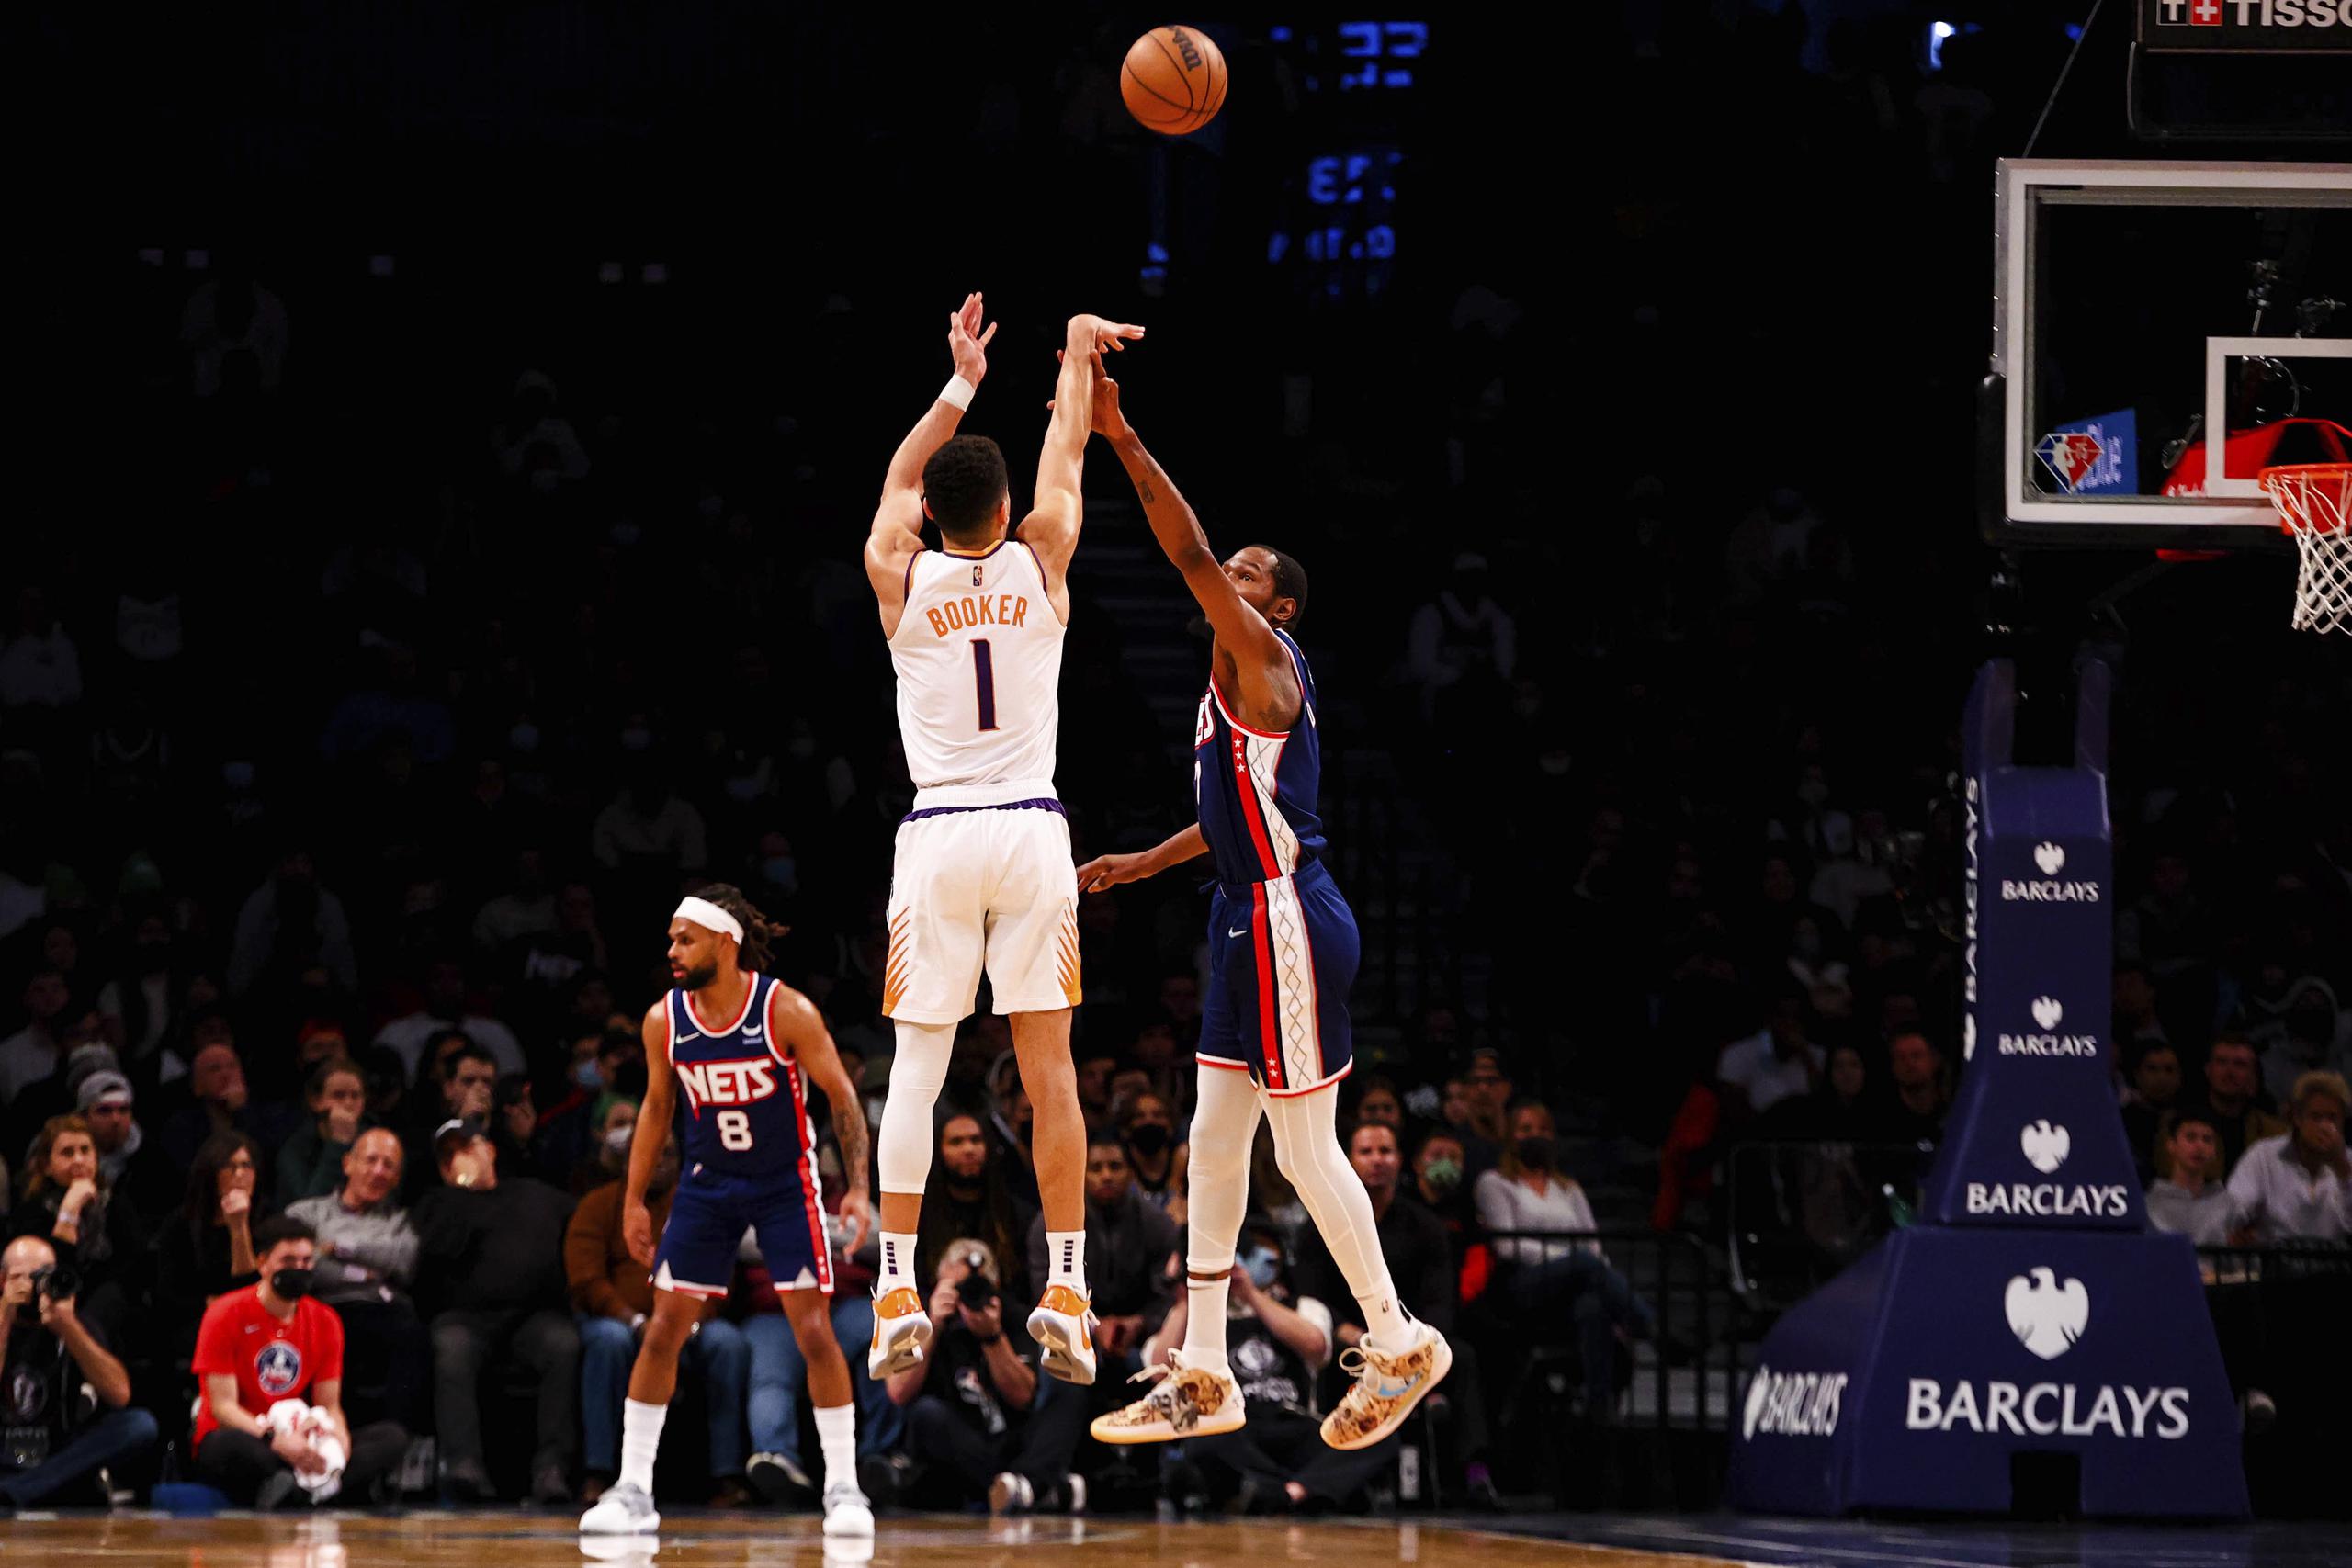 El defensa de los Suns de Phoenix, Devin Booker (3), realiza un disparo por encima de la defensa de Kevin Durant, de los Nets de Brooklyn, durante el partido del sábado que los Suns dominaron 113-107.